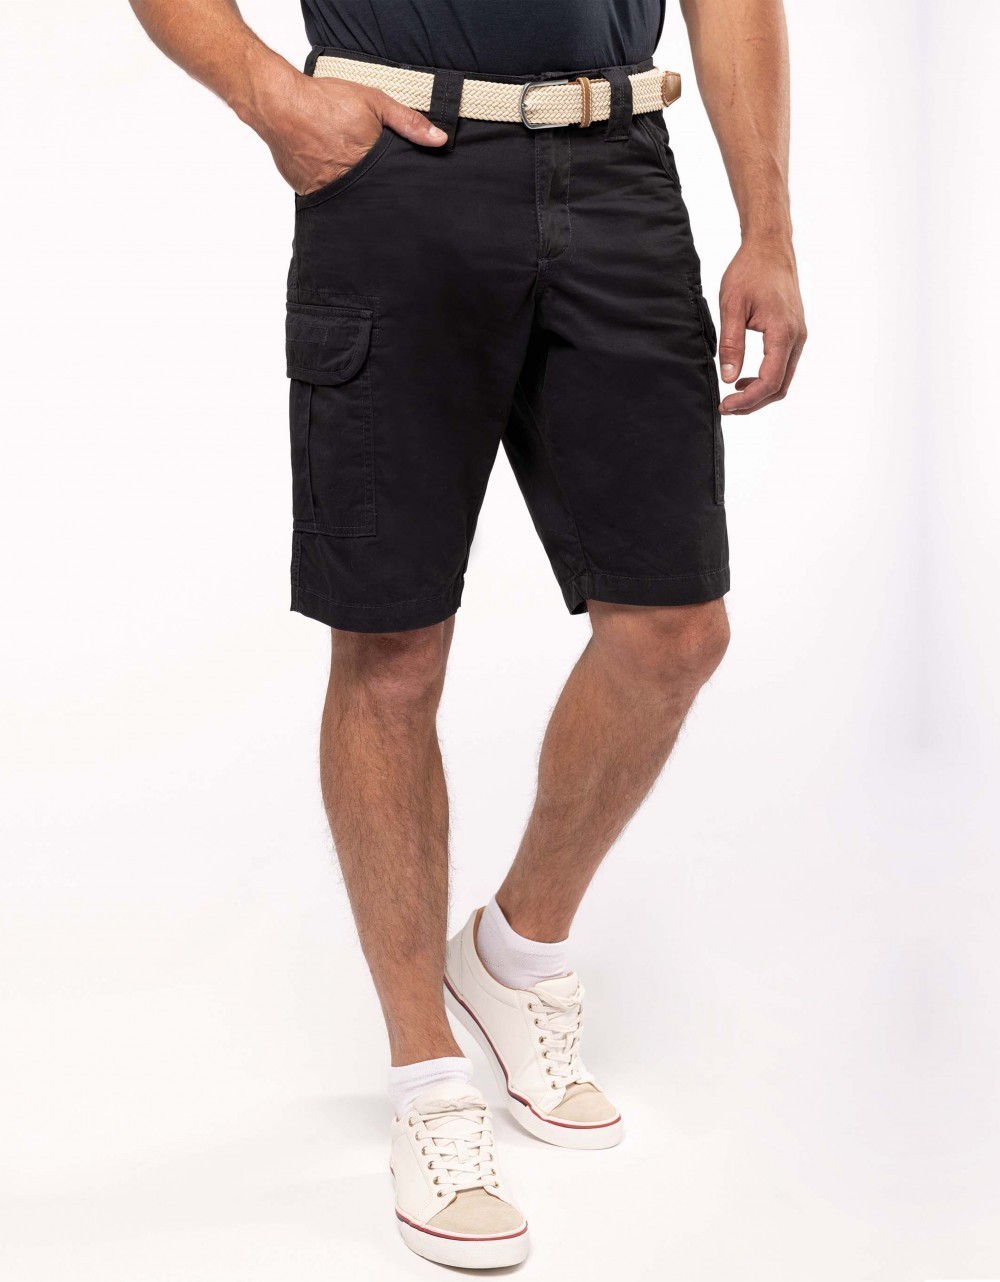 Shorts > Bermuda shorts - Multipocket